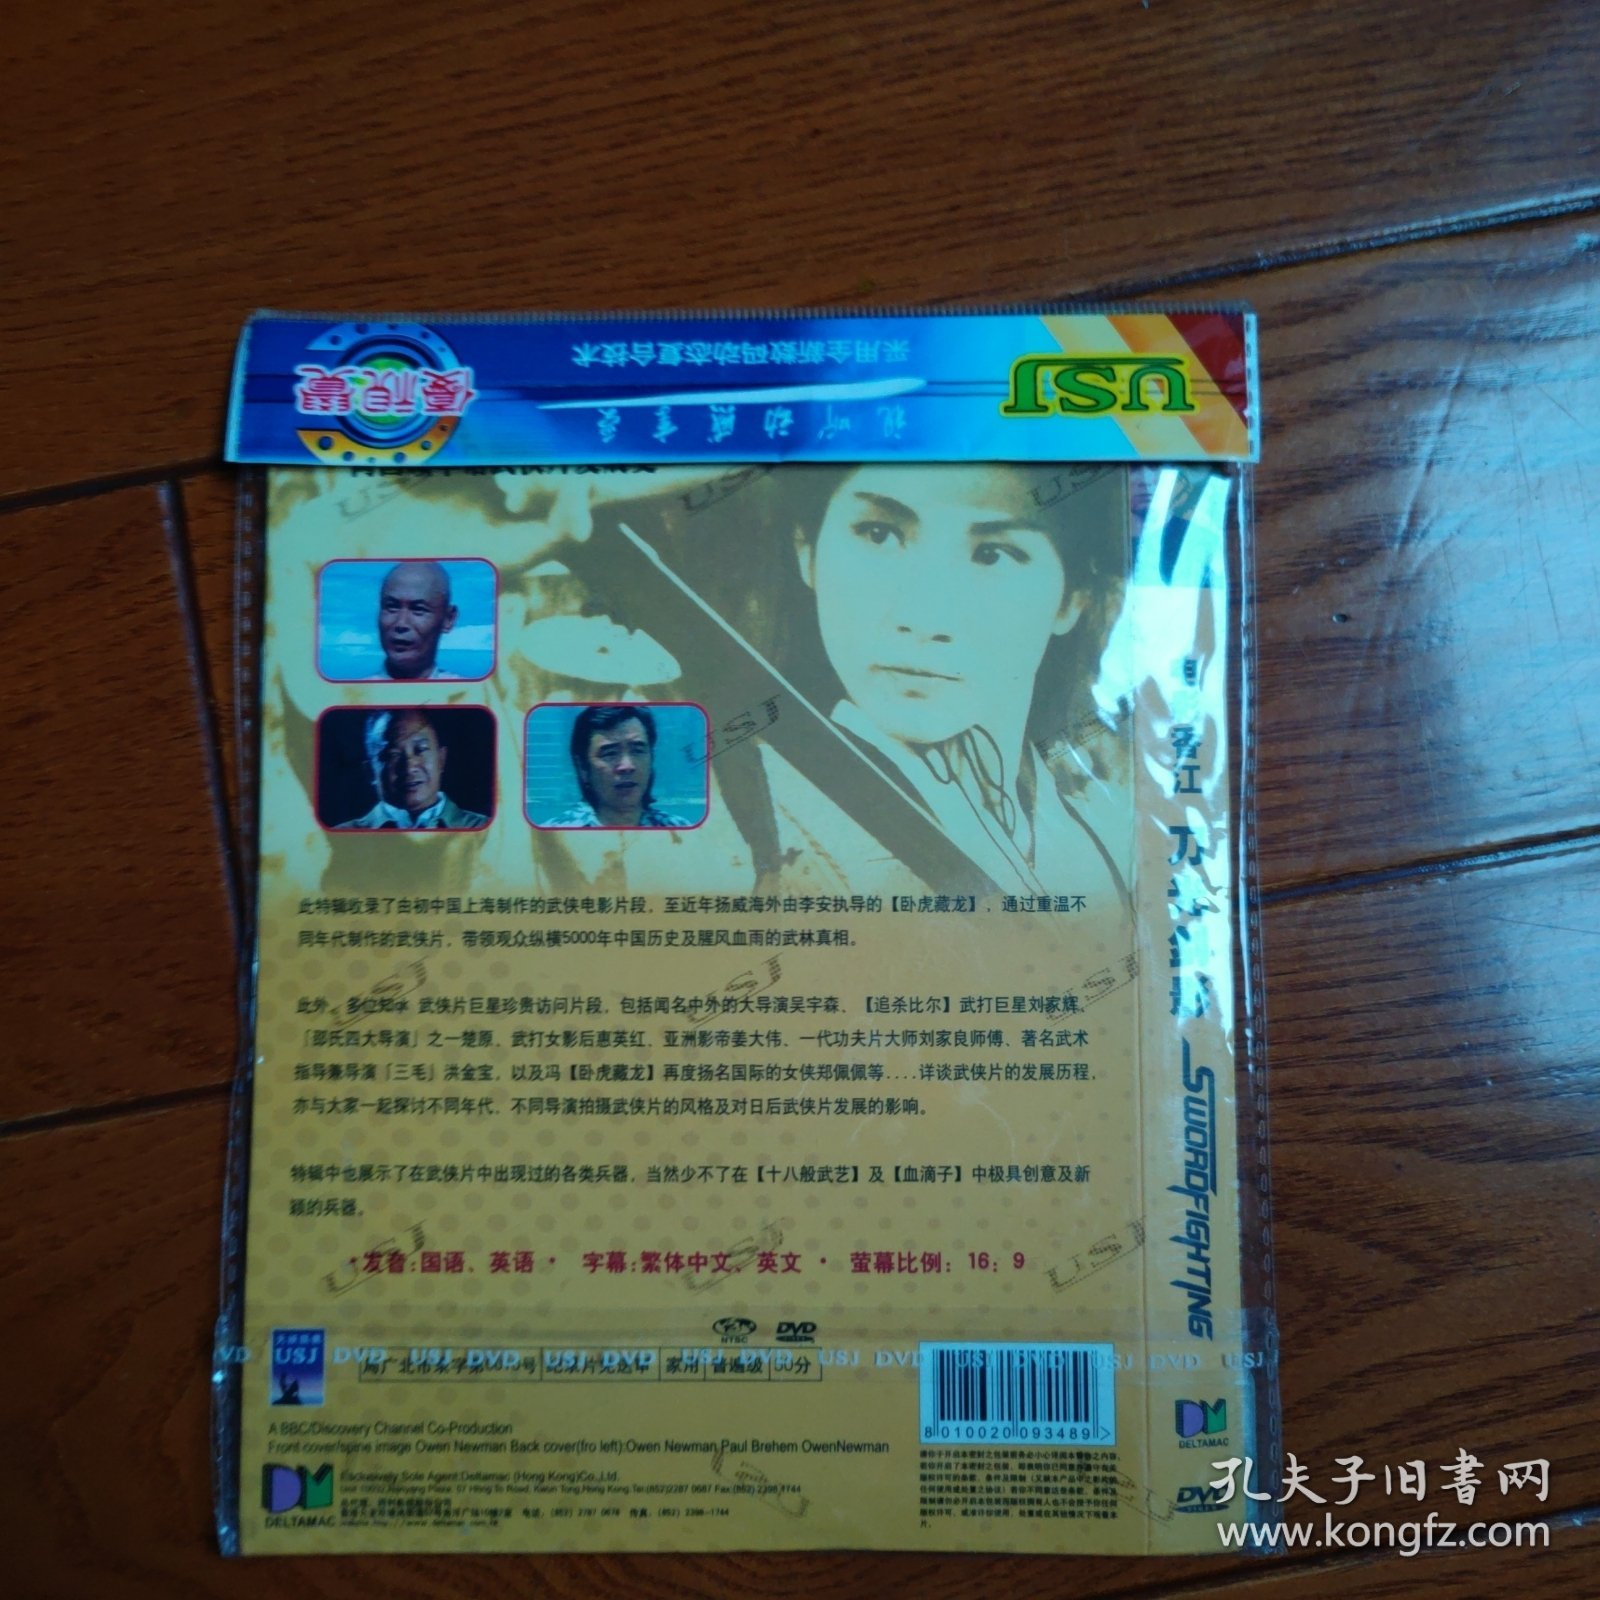 刀光剑影 DVD